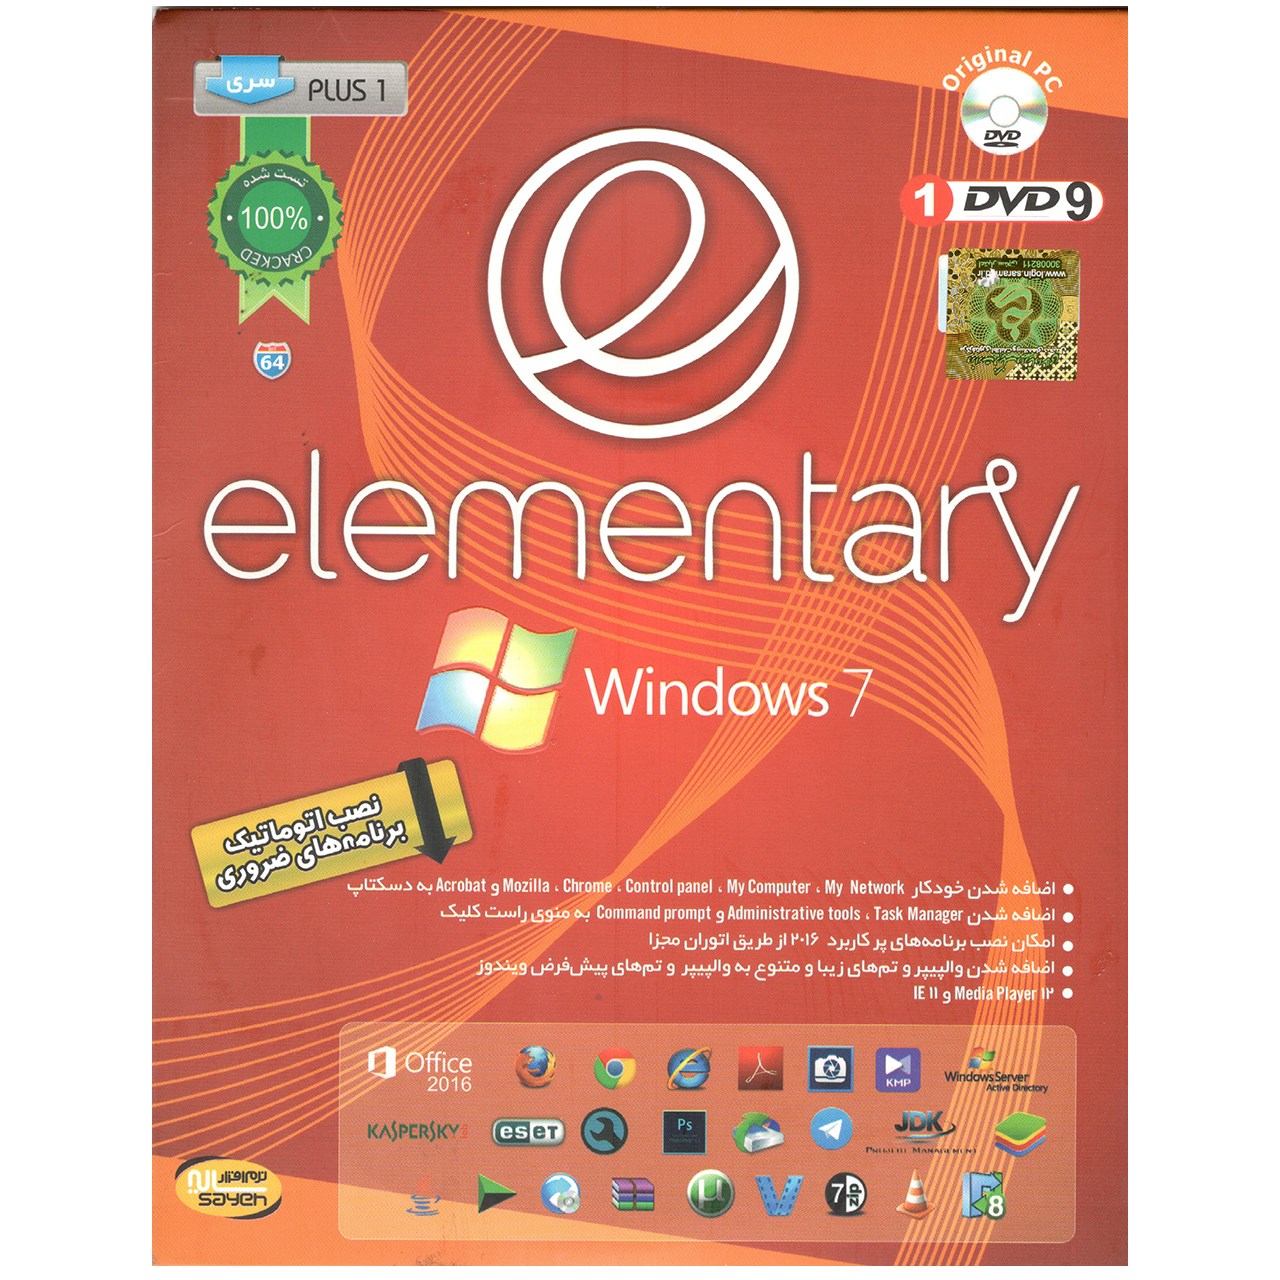 سیستم عامل Windows 7 Elementary نشر  سایه